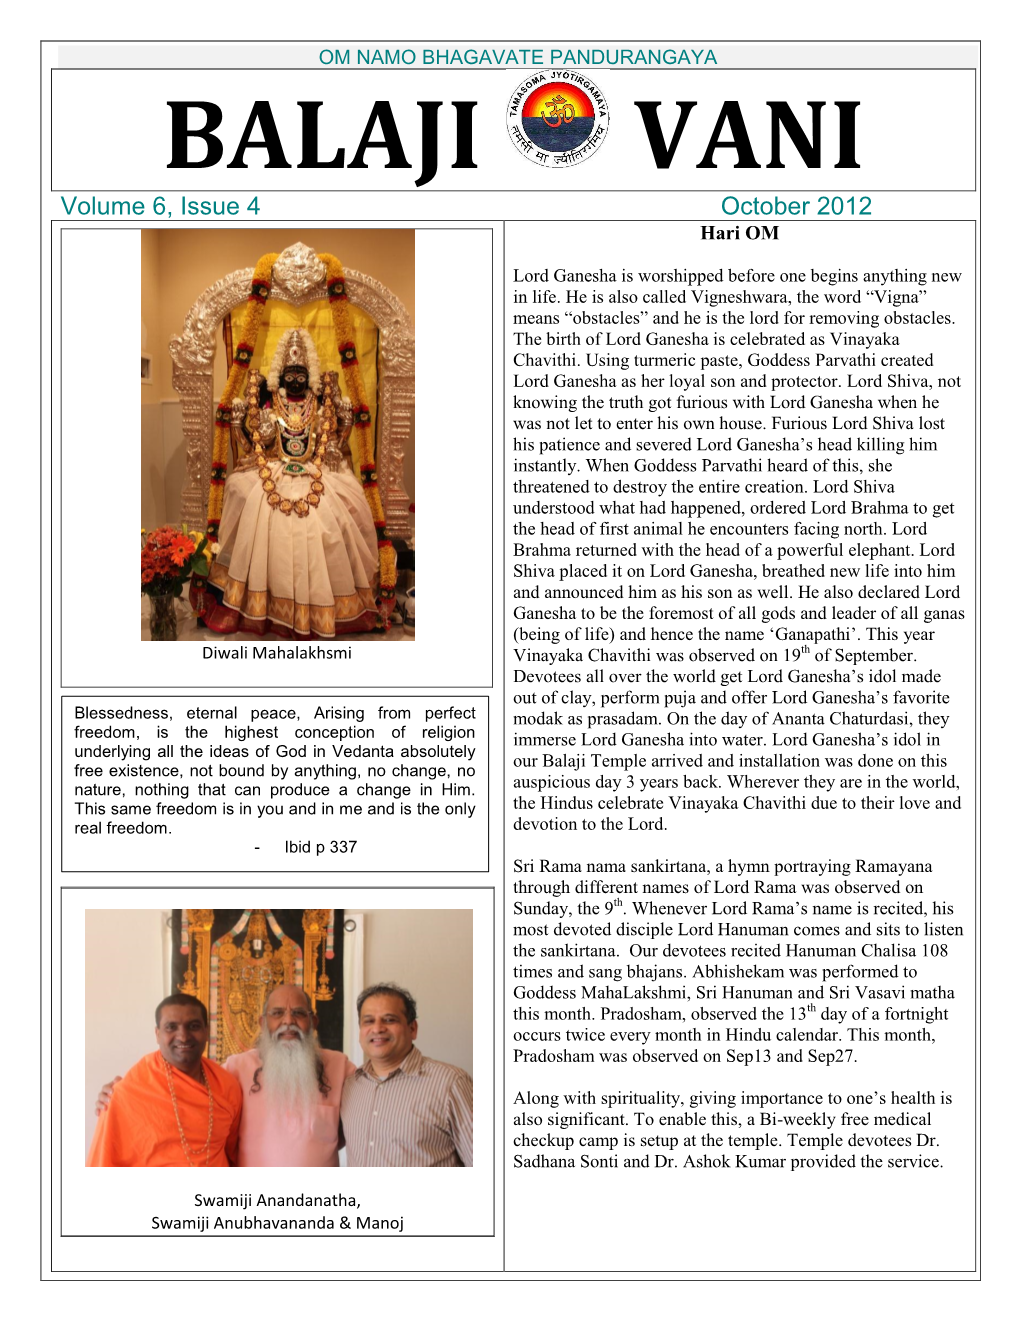 OM NAMO BHAGAVATE PANDURANGAYA BALAJI VANI Volume 6, Issue 4 October 2012 Hari OM